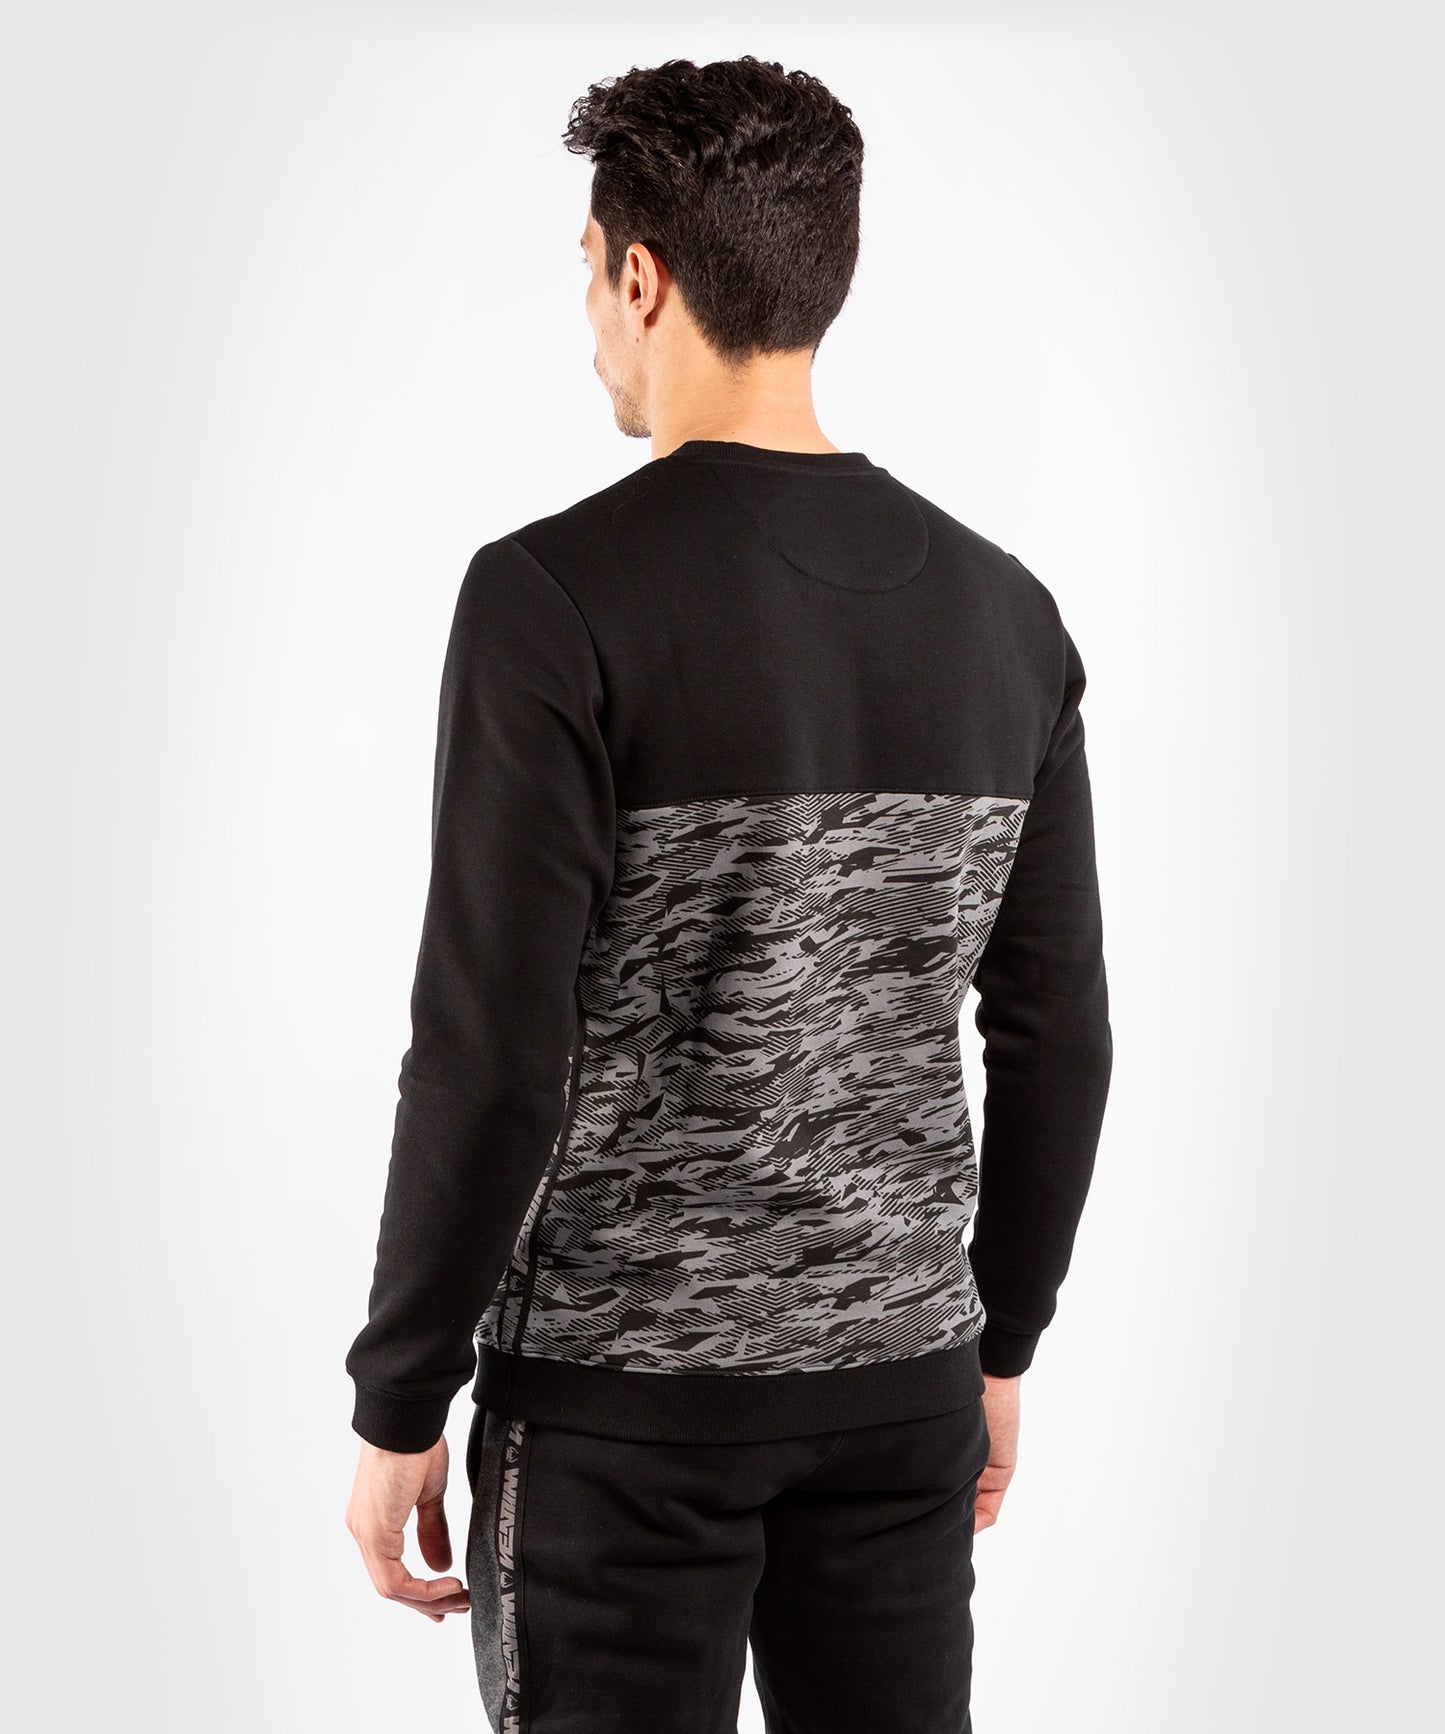 Venum Connect Crewneck Sweatshirt - Black/Dark Camo